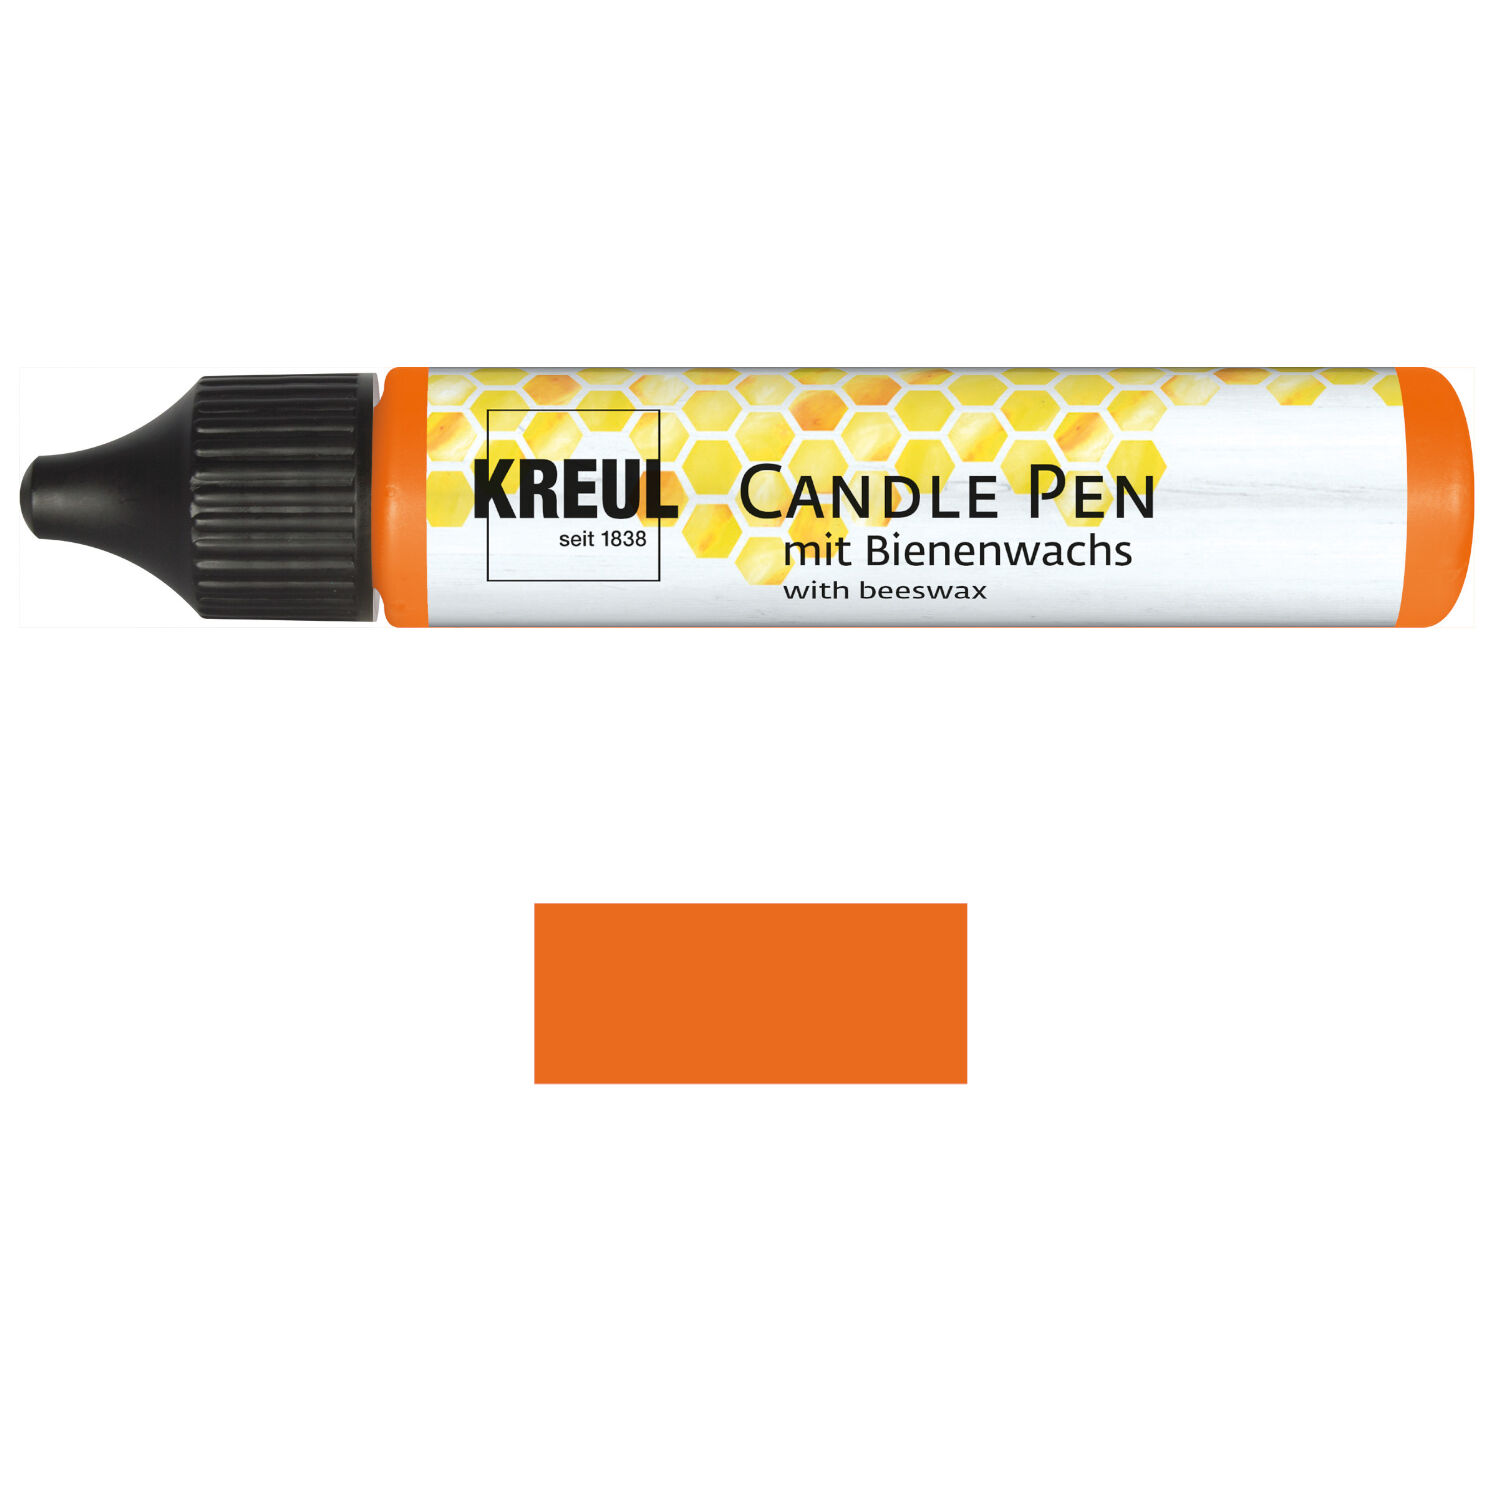 NEU KREUL Candle Pen / Kerzen-Stift, 29ml, Orange